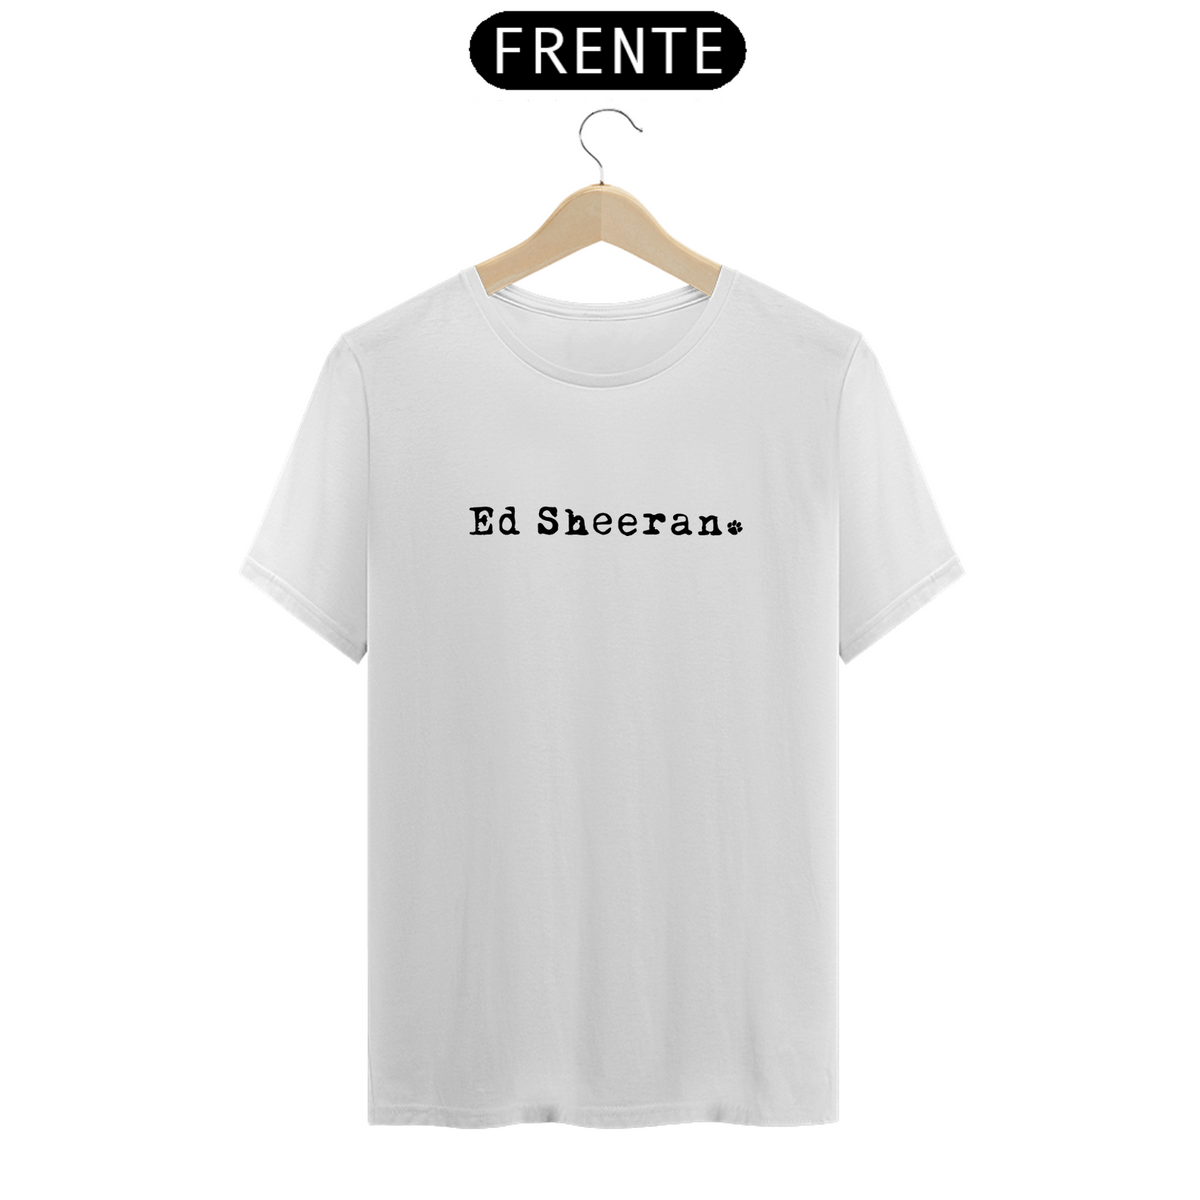 Nome do produto: Camiseta Unissex - Ed Sheeran